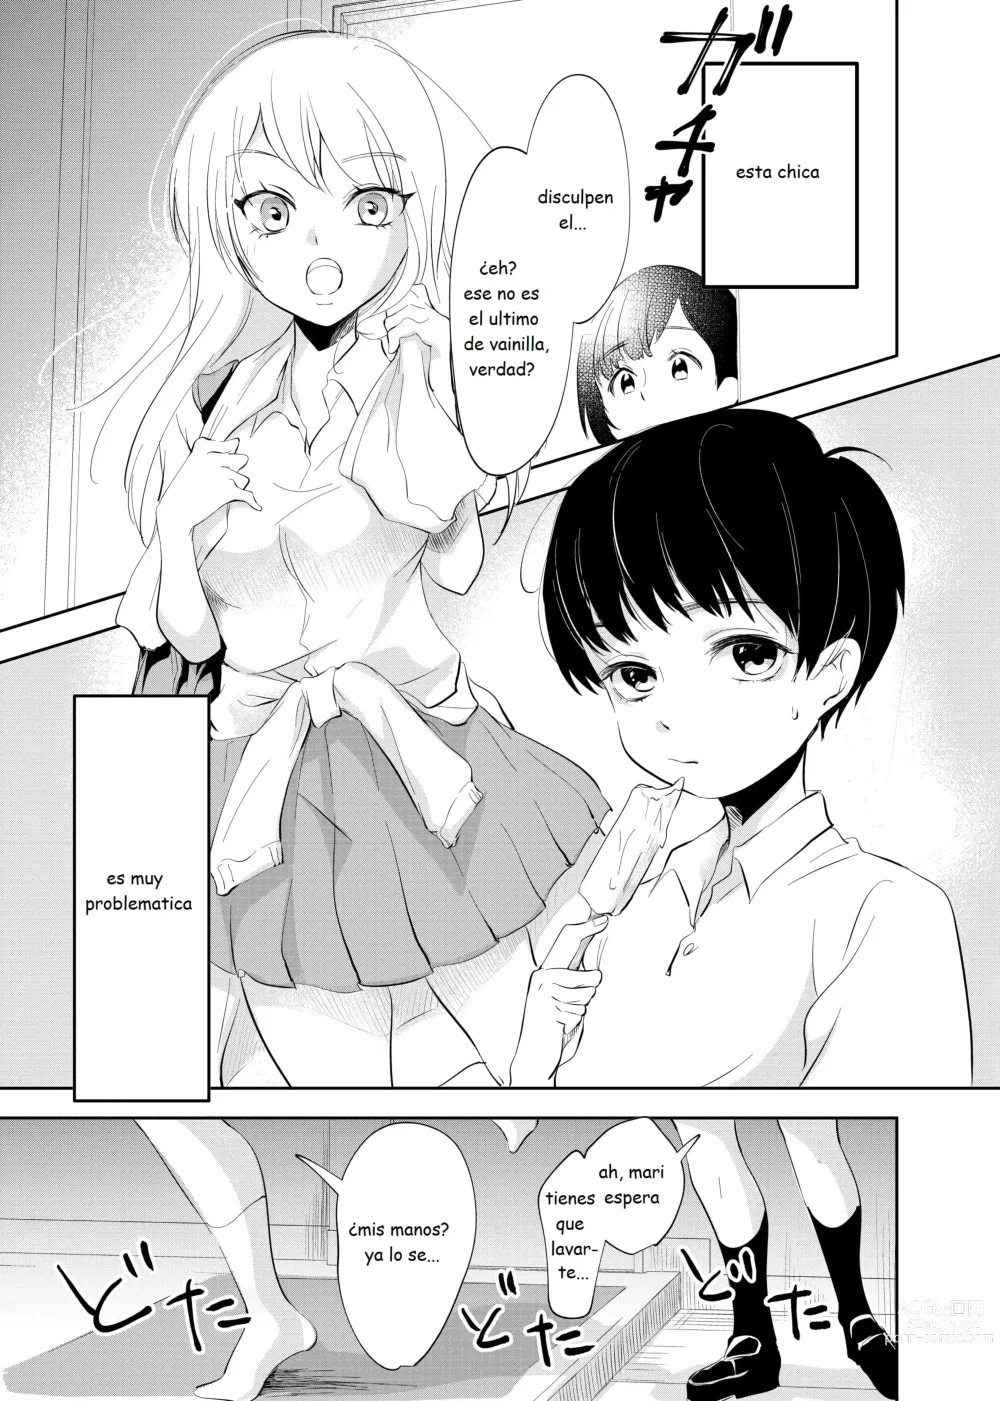 Page 2 of doujinshi Despues de la escuela